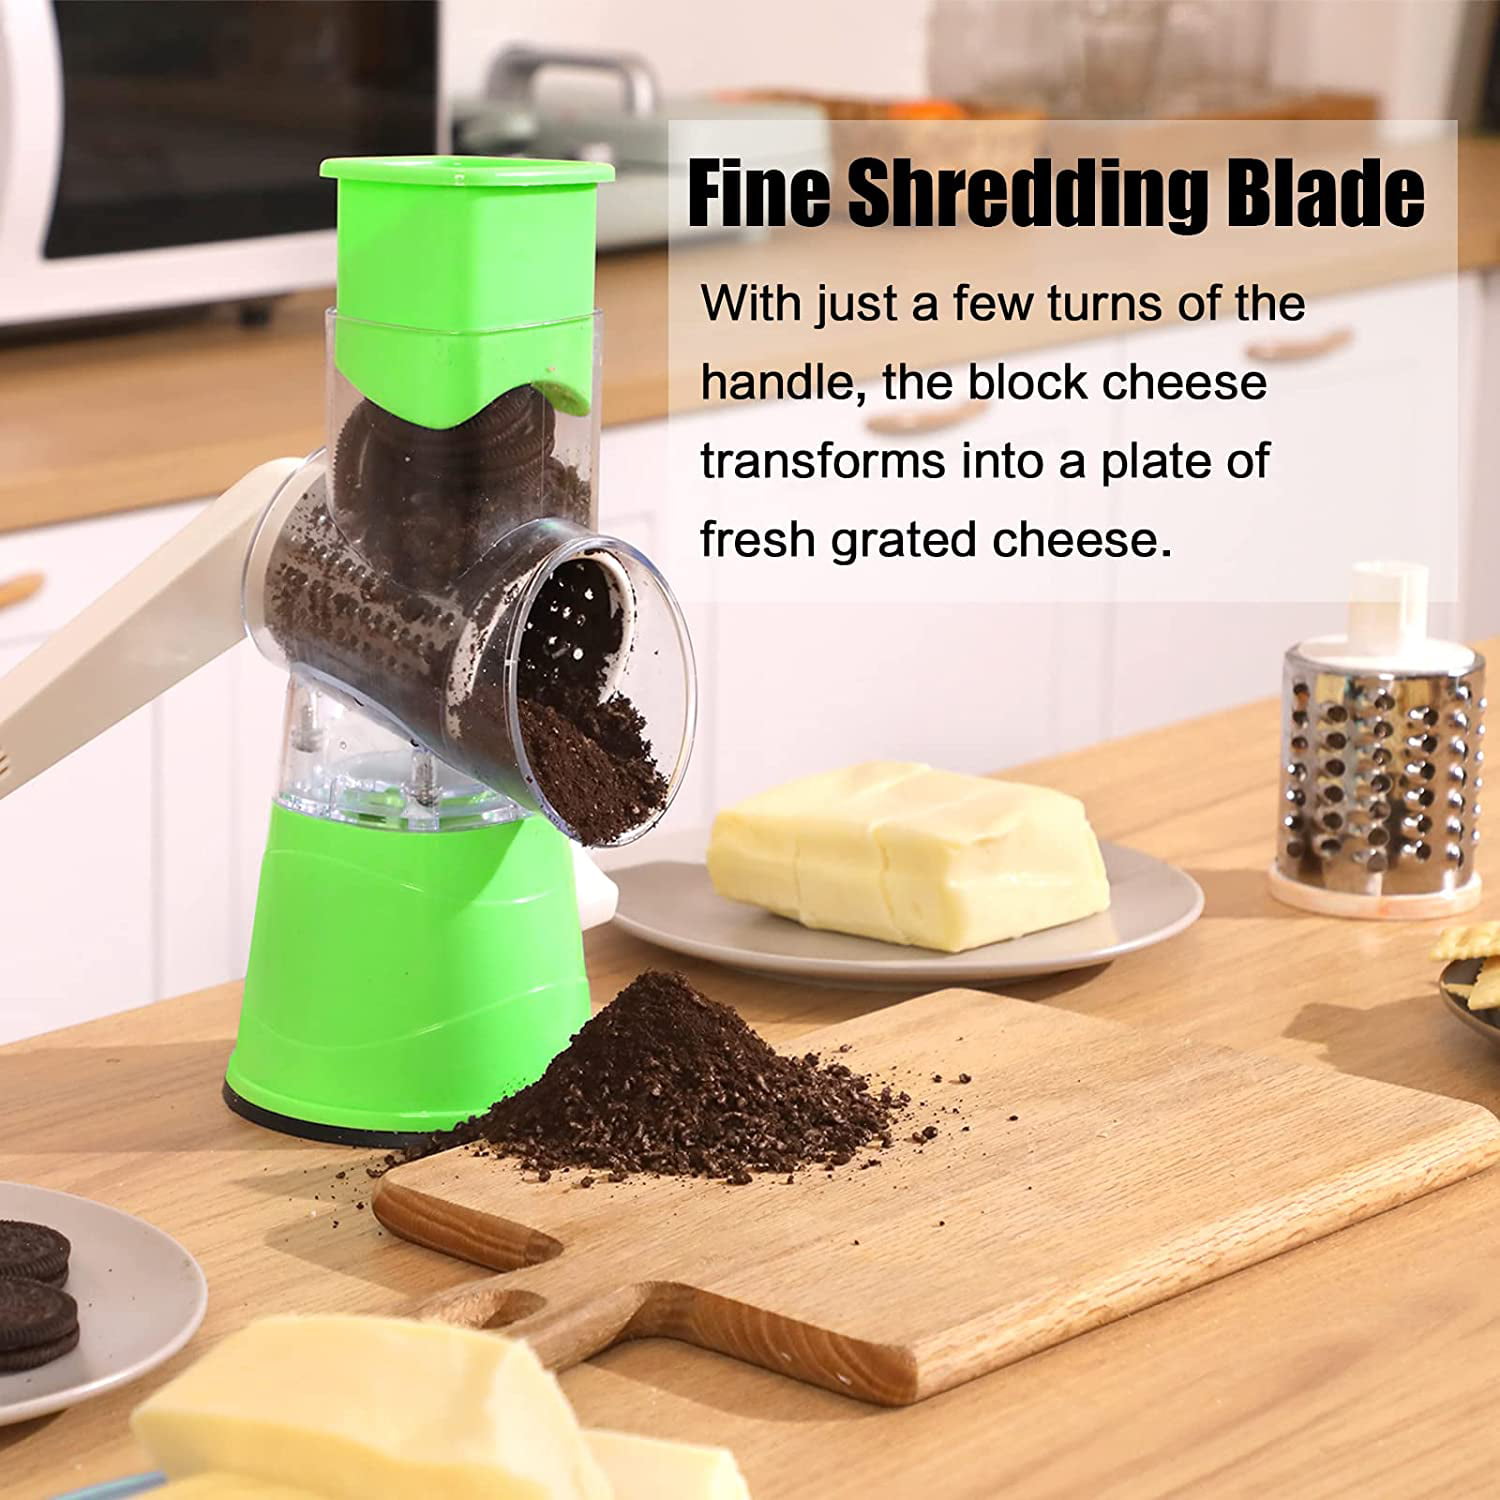 Kitchen Esthete Rotary Cheese Grater - Handheld Rotating Cheese Shredd —  CHIMIYA